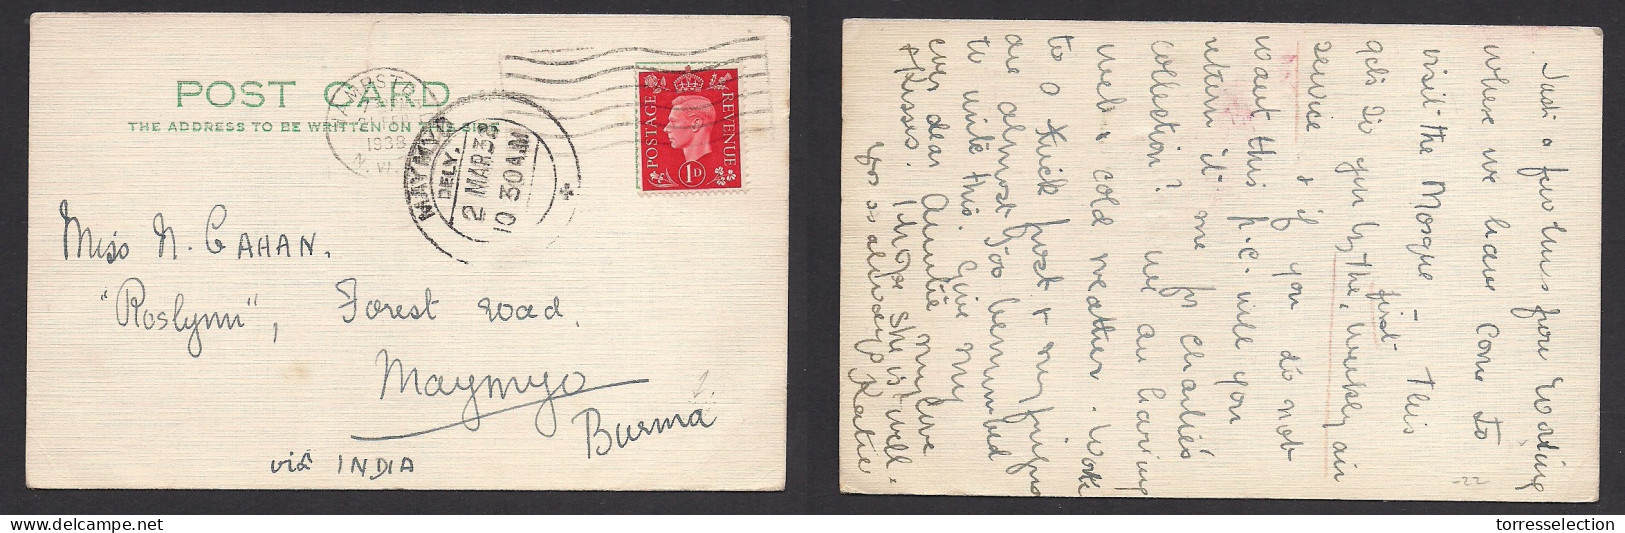 Great Britain - XX. 1938 (21 Febr) Hampstead - Burma, MayMyo (2 March) Via India. 1d Red Private Comercial Fkd Card. XSA - ...-1840 Precursori